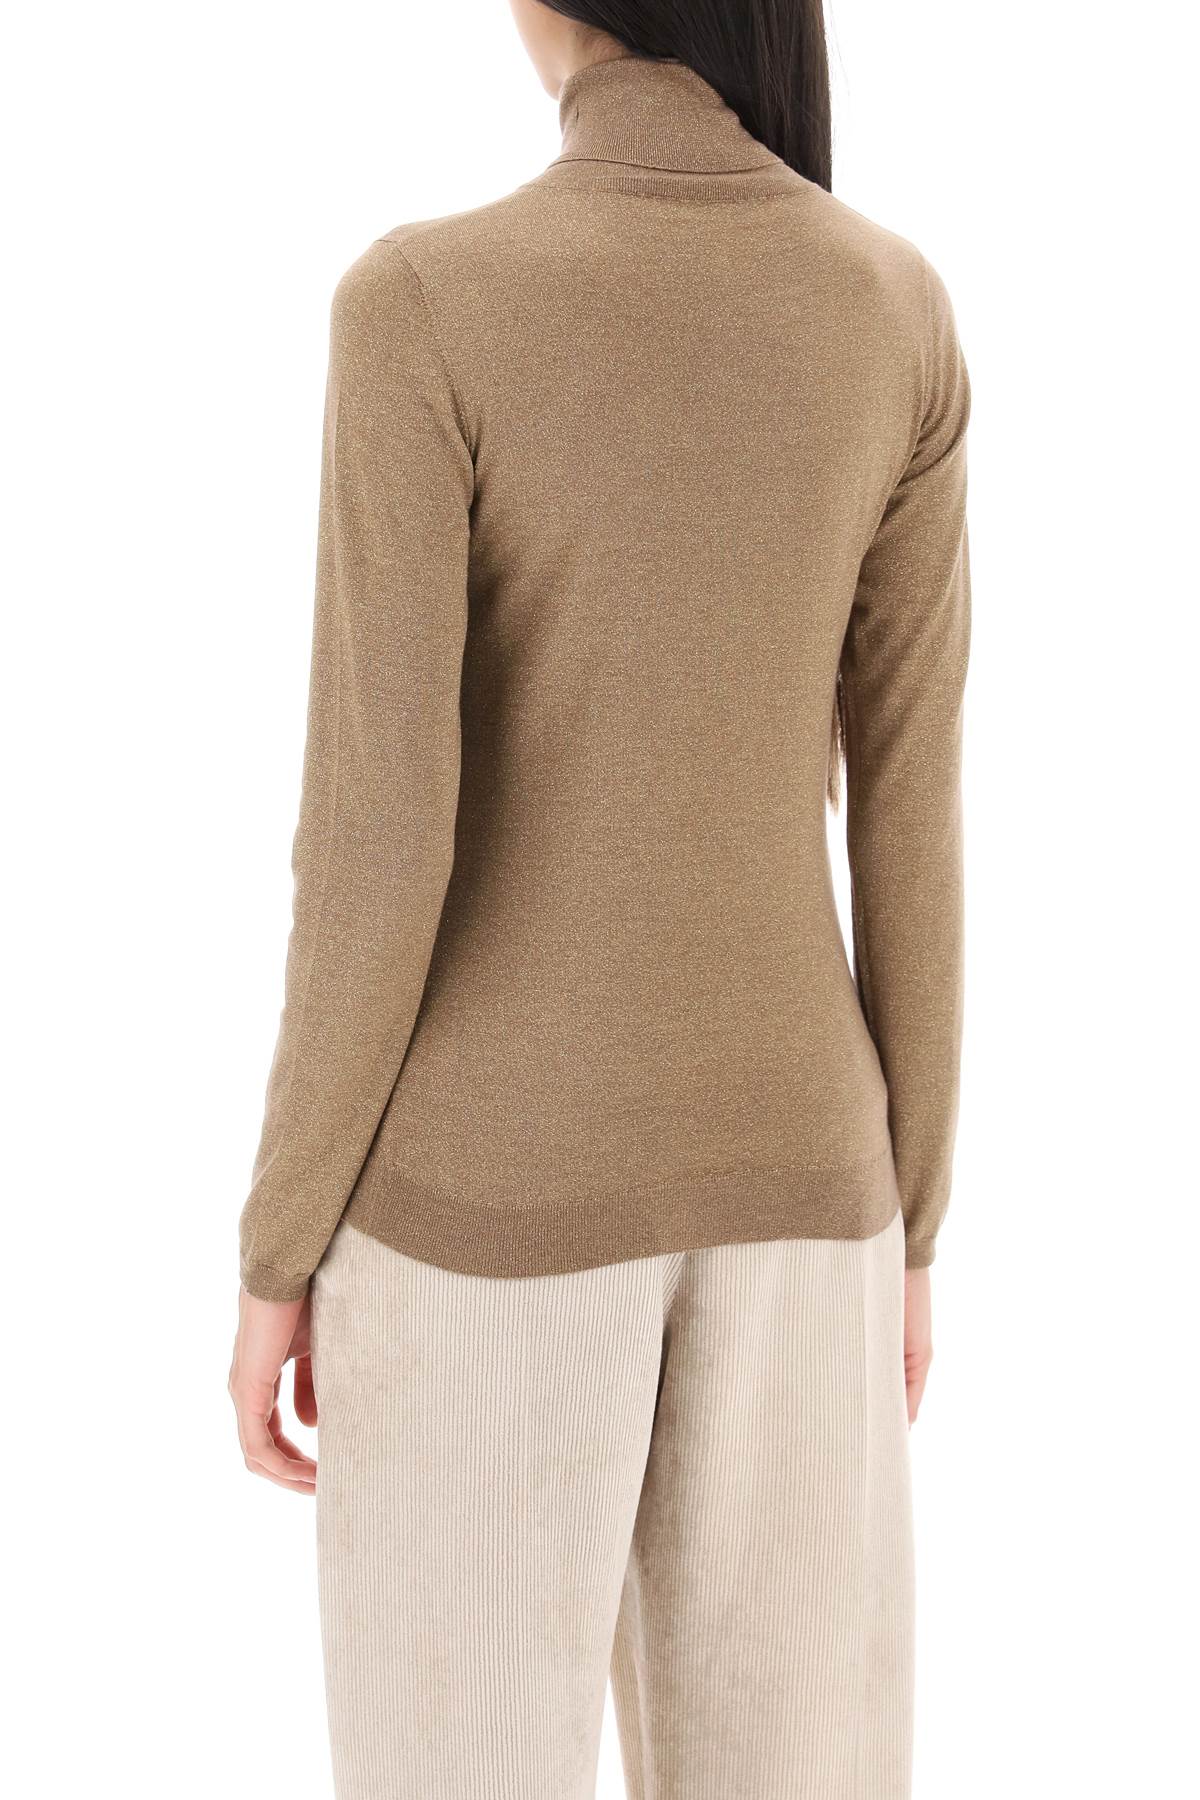 Brunello cucinelli turtleneck sweater in cashmere and silk lurex knit